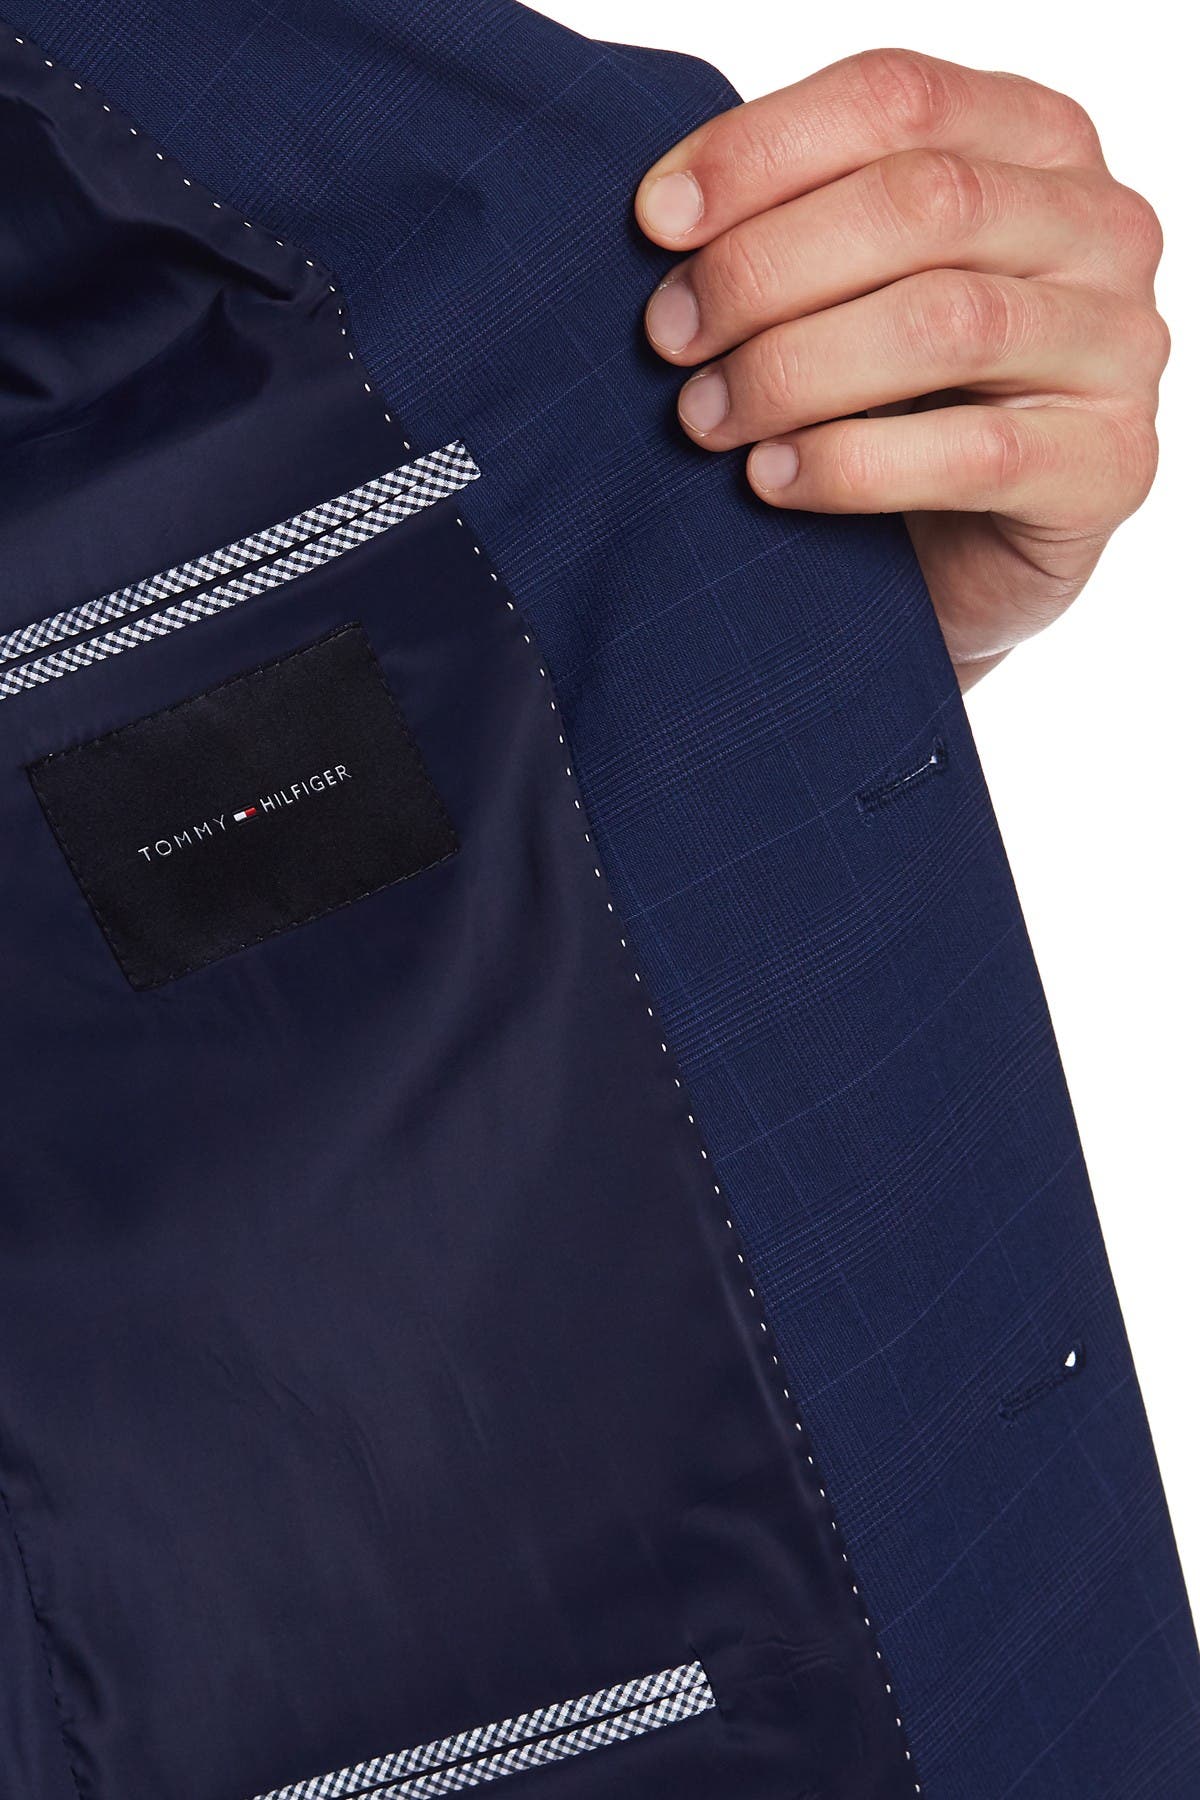 Notch Lapel /& Front Flap Pockets Tommy Hilfiger Boys/' Blazer Suit Jacket Button Closure